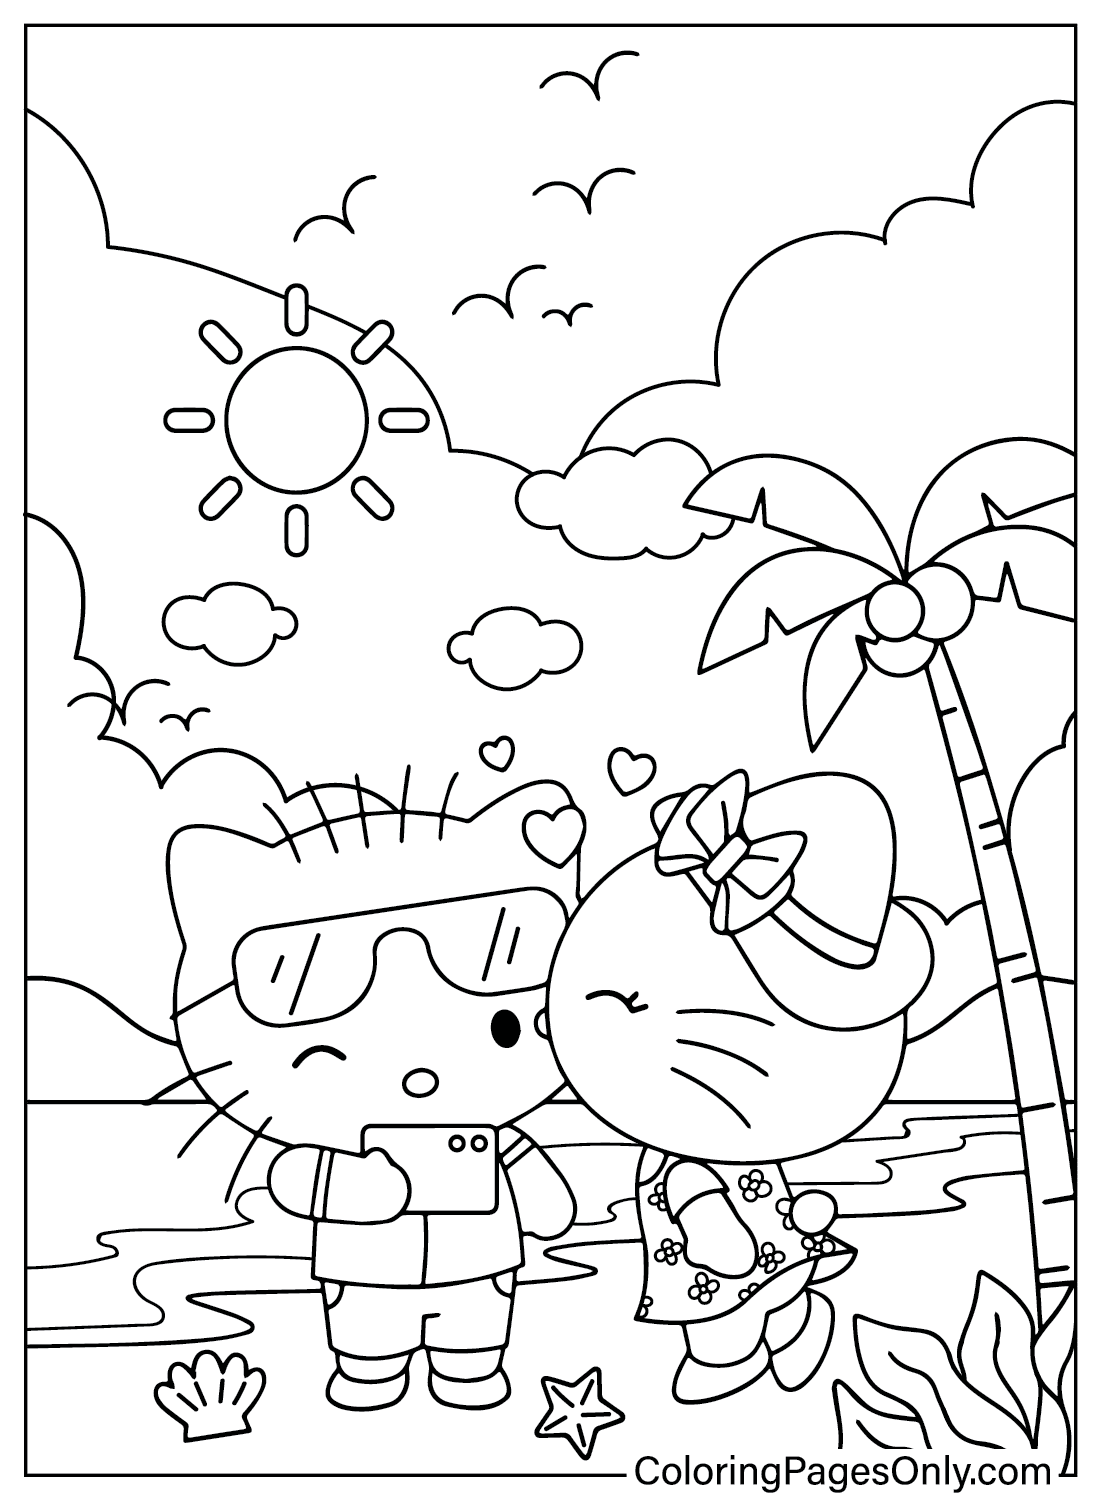 Бесплатная раскраска Hello Kitty для печати